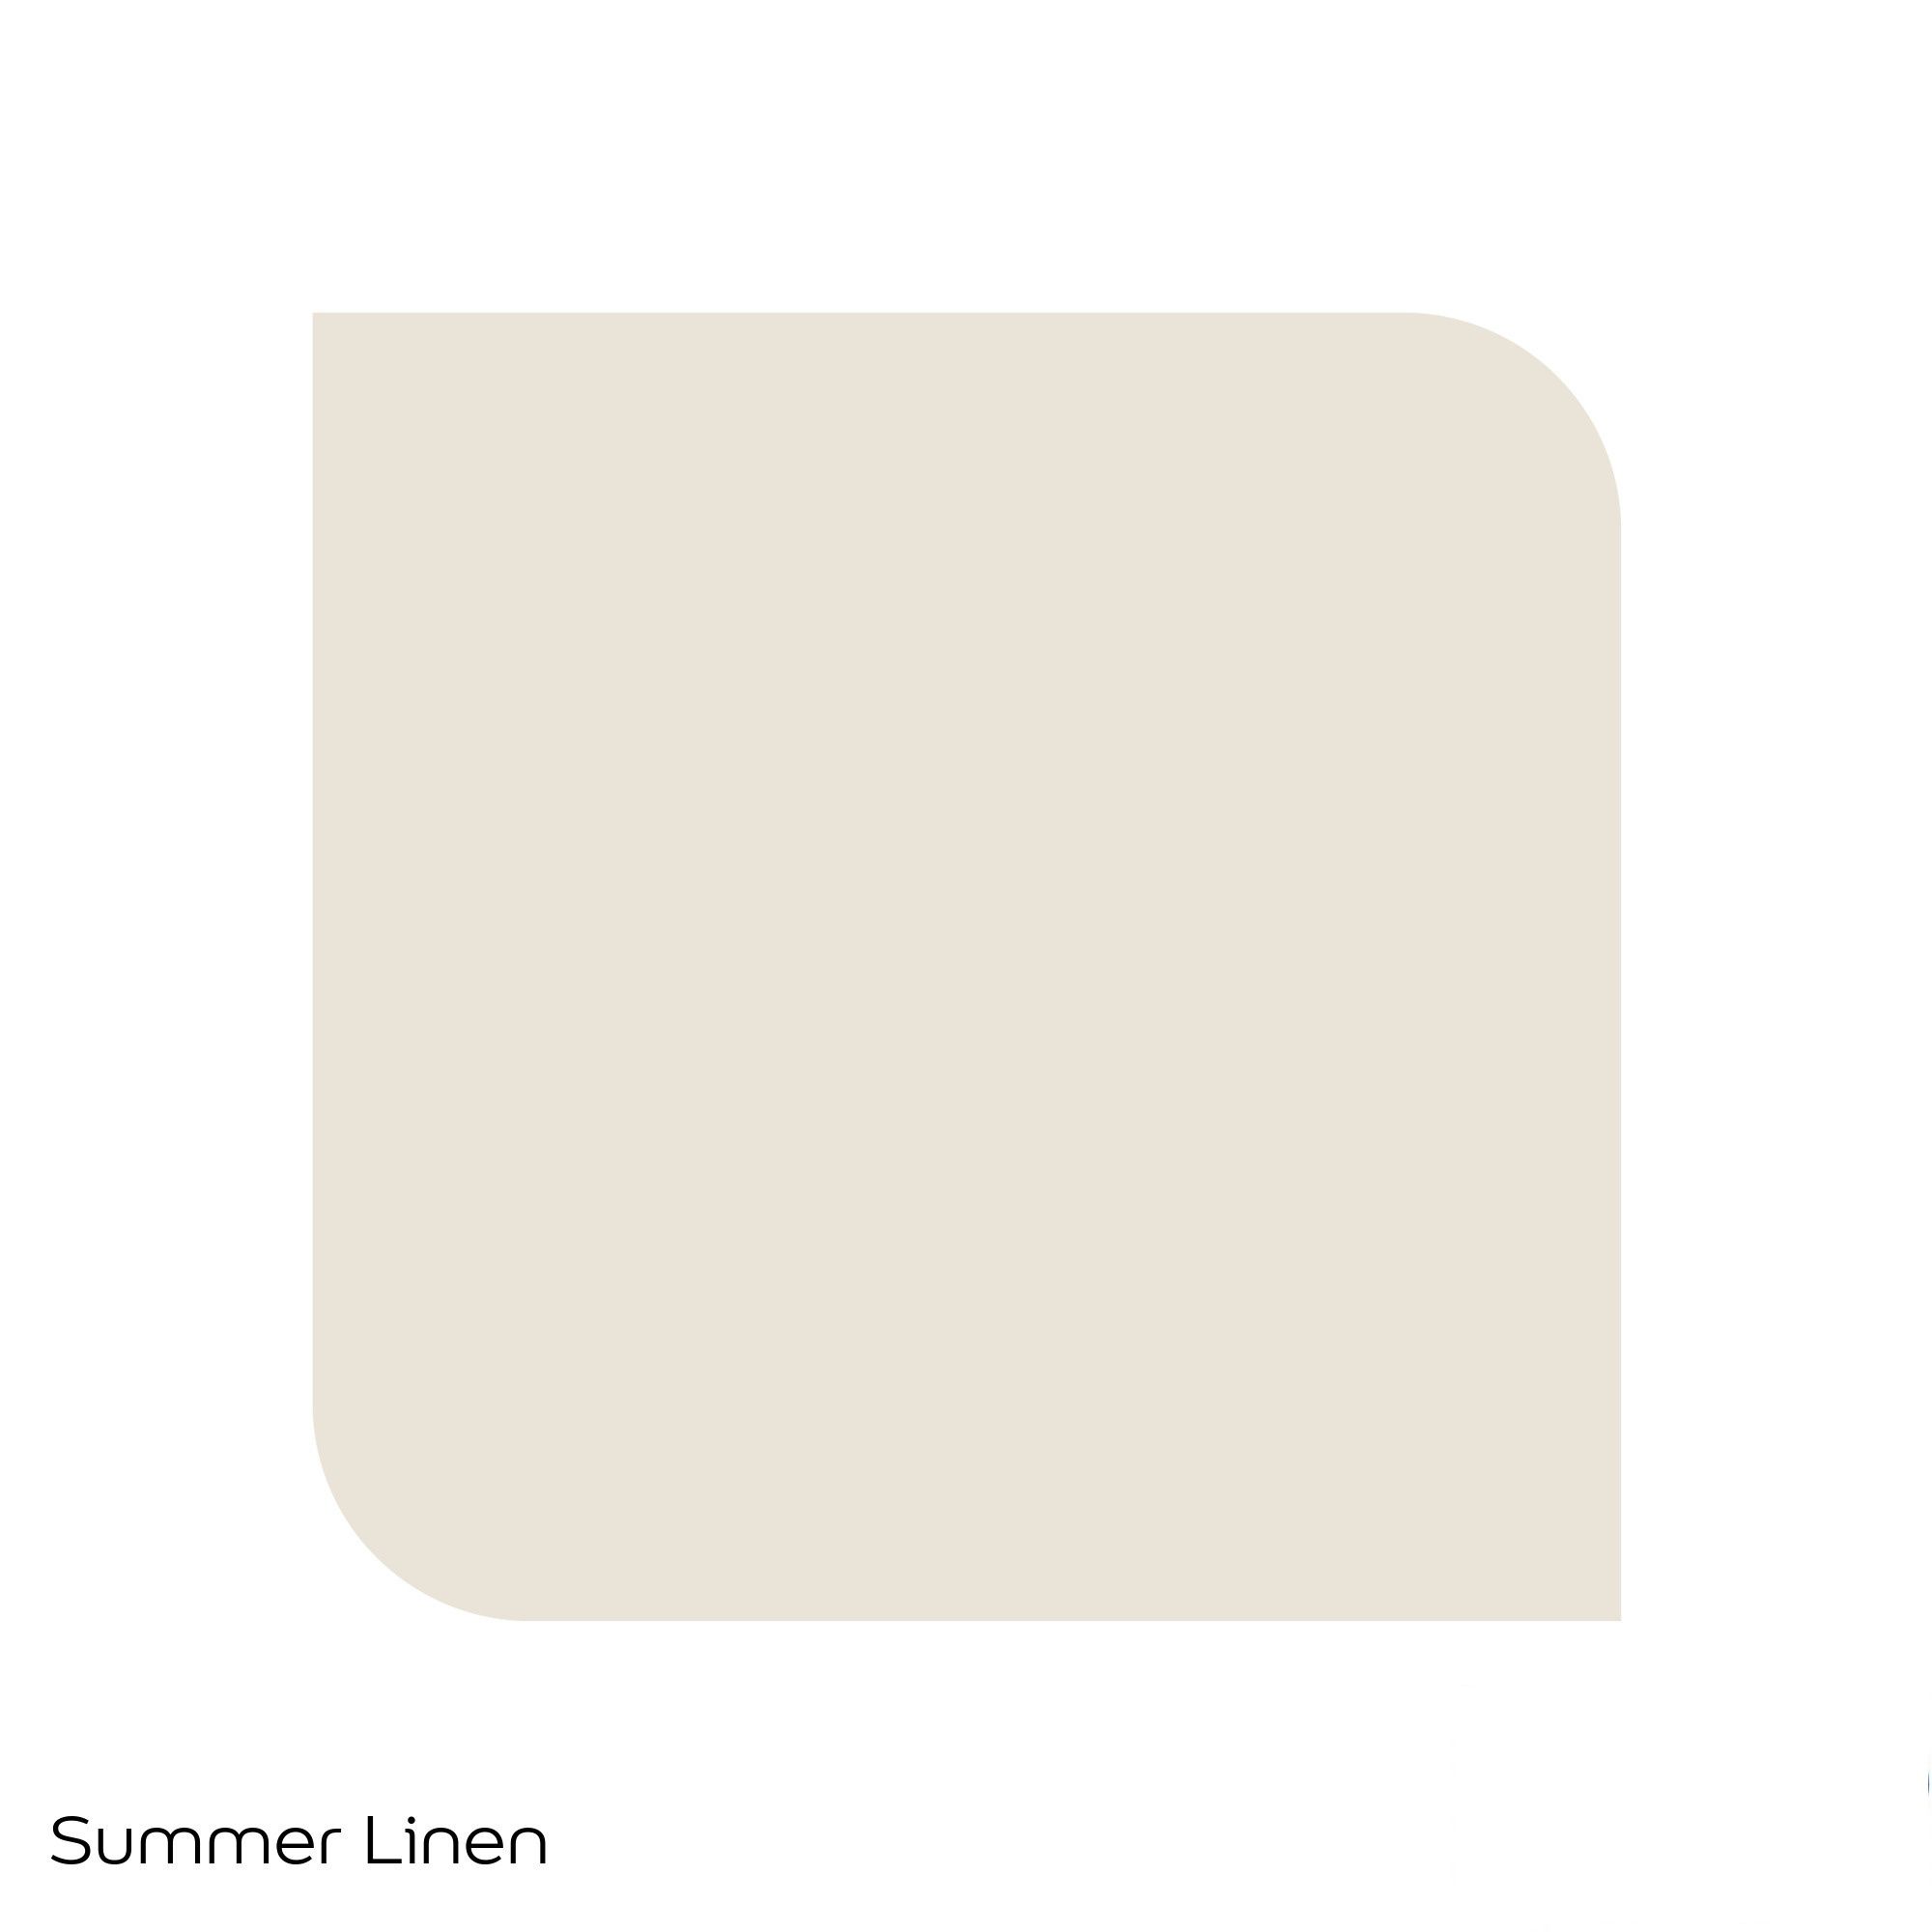 Dulux Standard Summer linen Matt Emulsion paint, 30ml